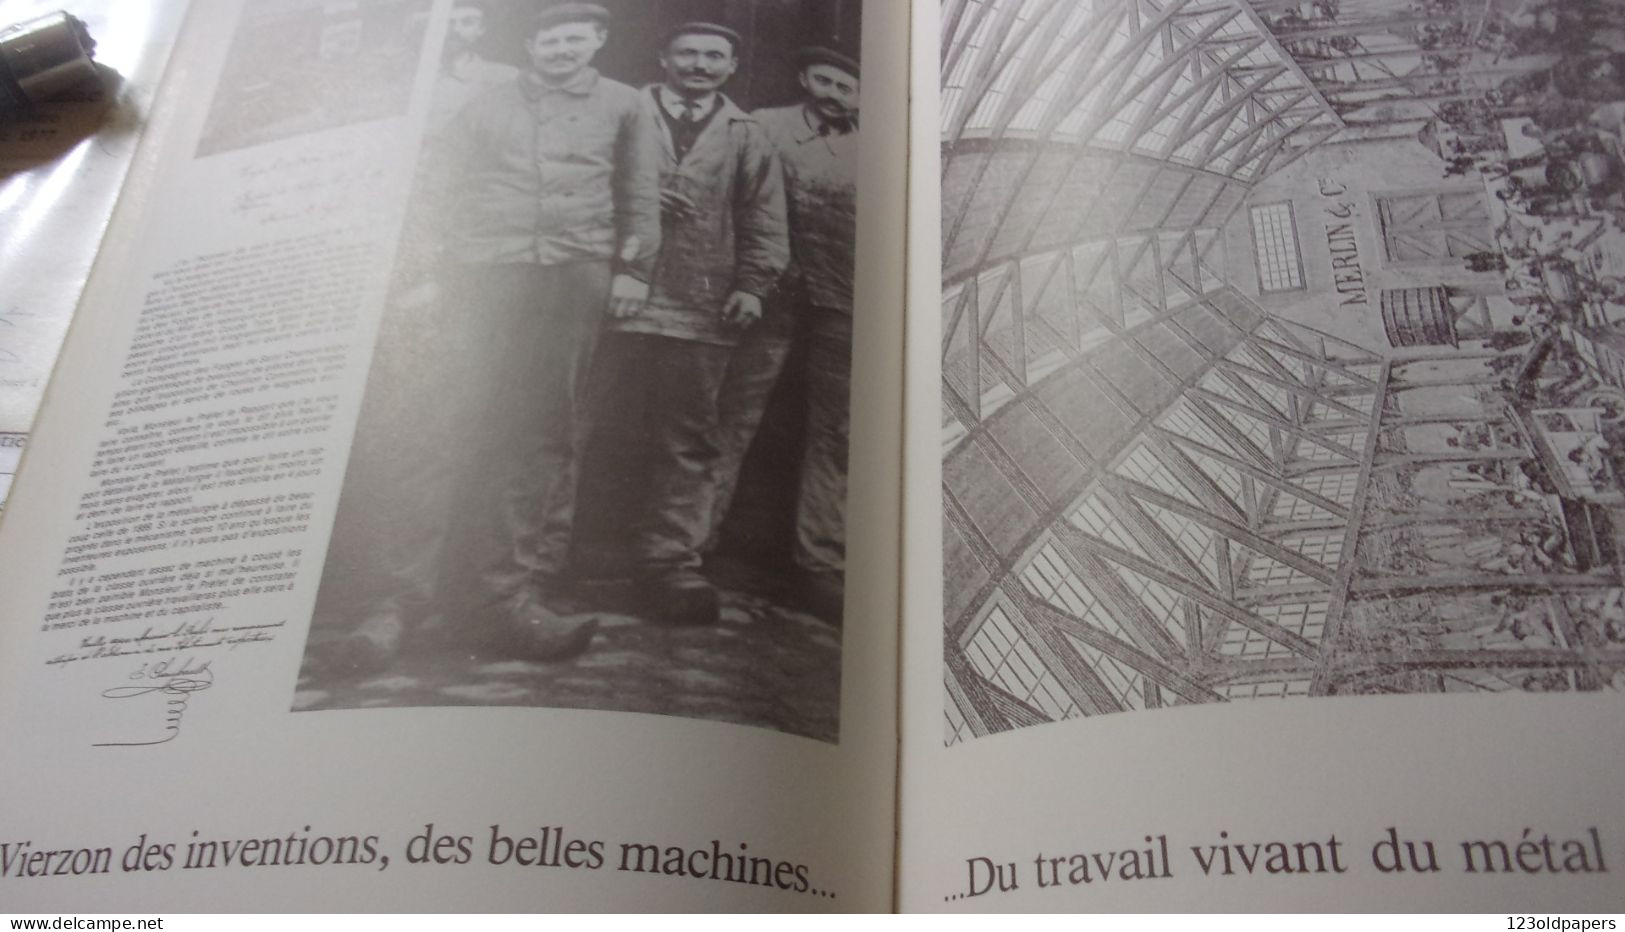 1979 Vierzon célèbre le bicentenaire de son industrialisation, paysages des hommes et LEUR TRAVAIL FORGE VERRERIE ...